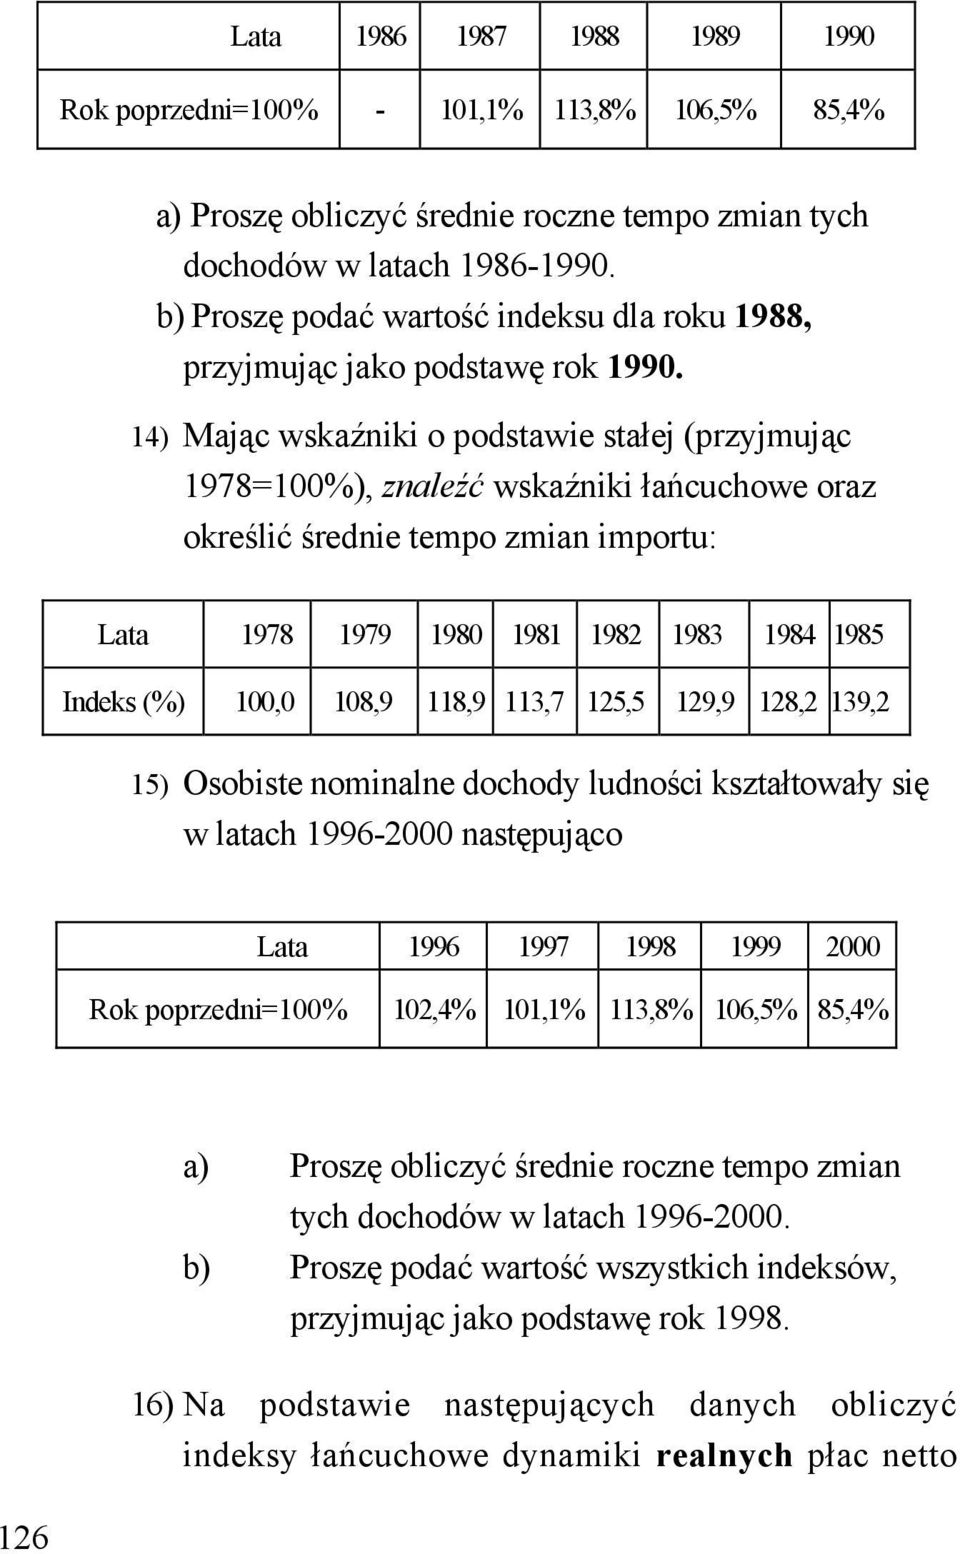 14) Mając wskaźniki o podstawie stałej (przyjmując 1978=100%), znaleźć wskaźniki łańcuchowe oraz określić średnie tempo zmian importu: Lata 1978 1979 1980 1981 1982 1983 1984 1985 Indeks (%) 100,0